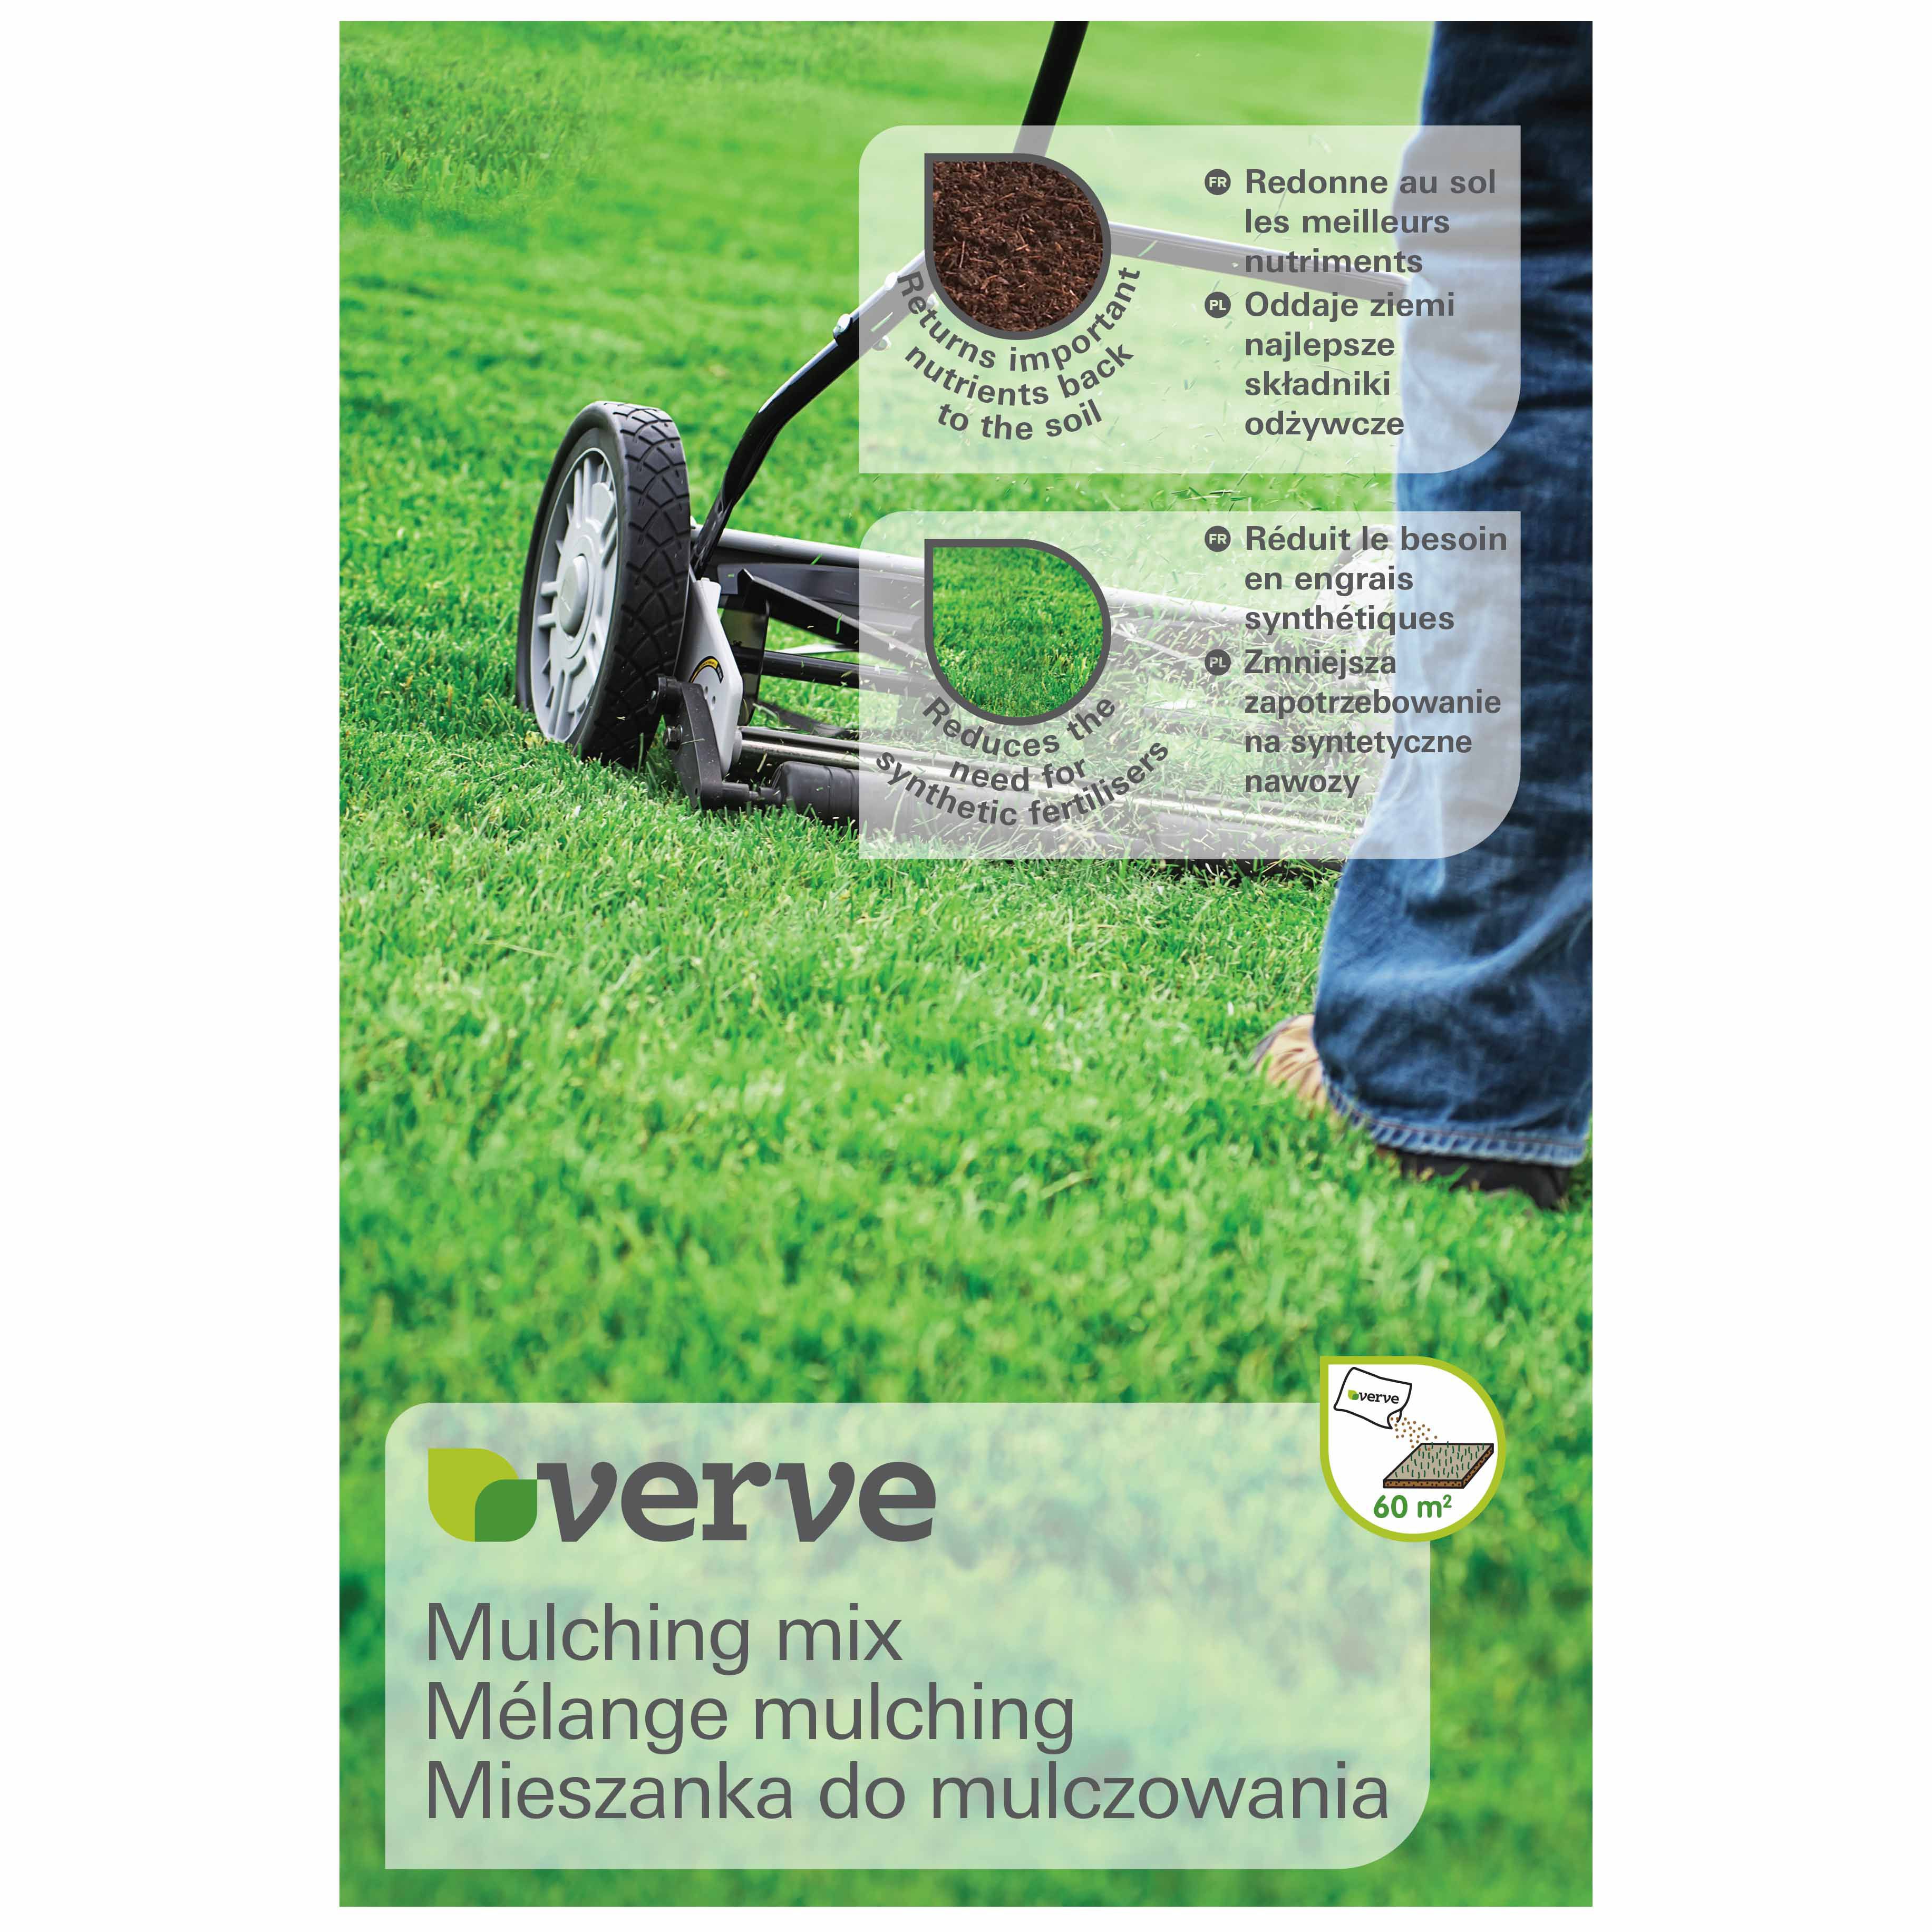 Verve Mulching mix Grass seeds 1.5kg